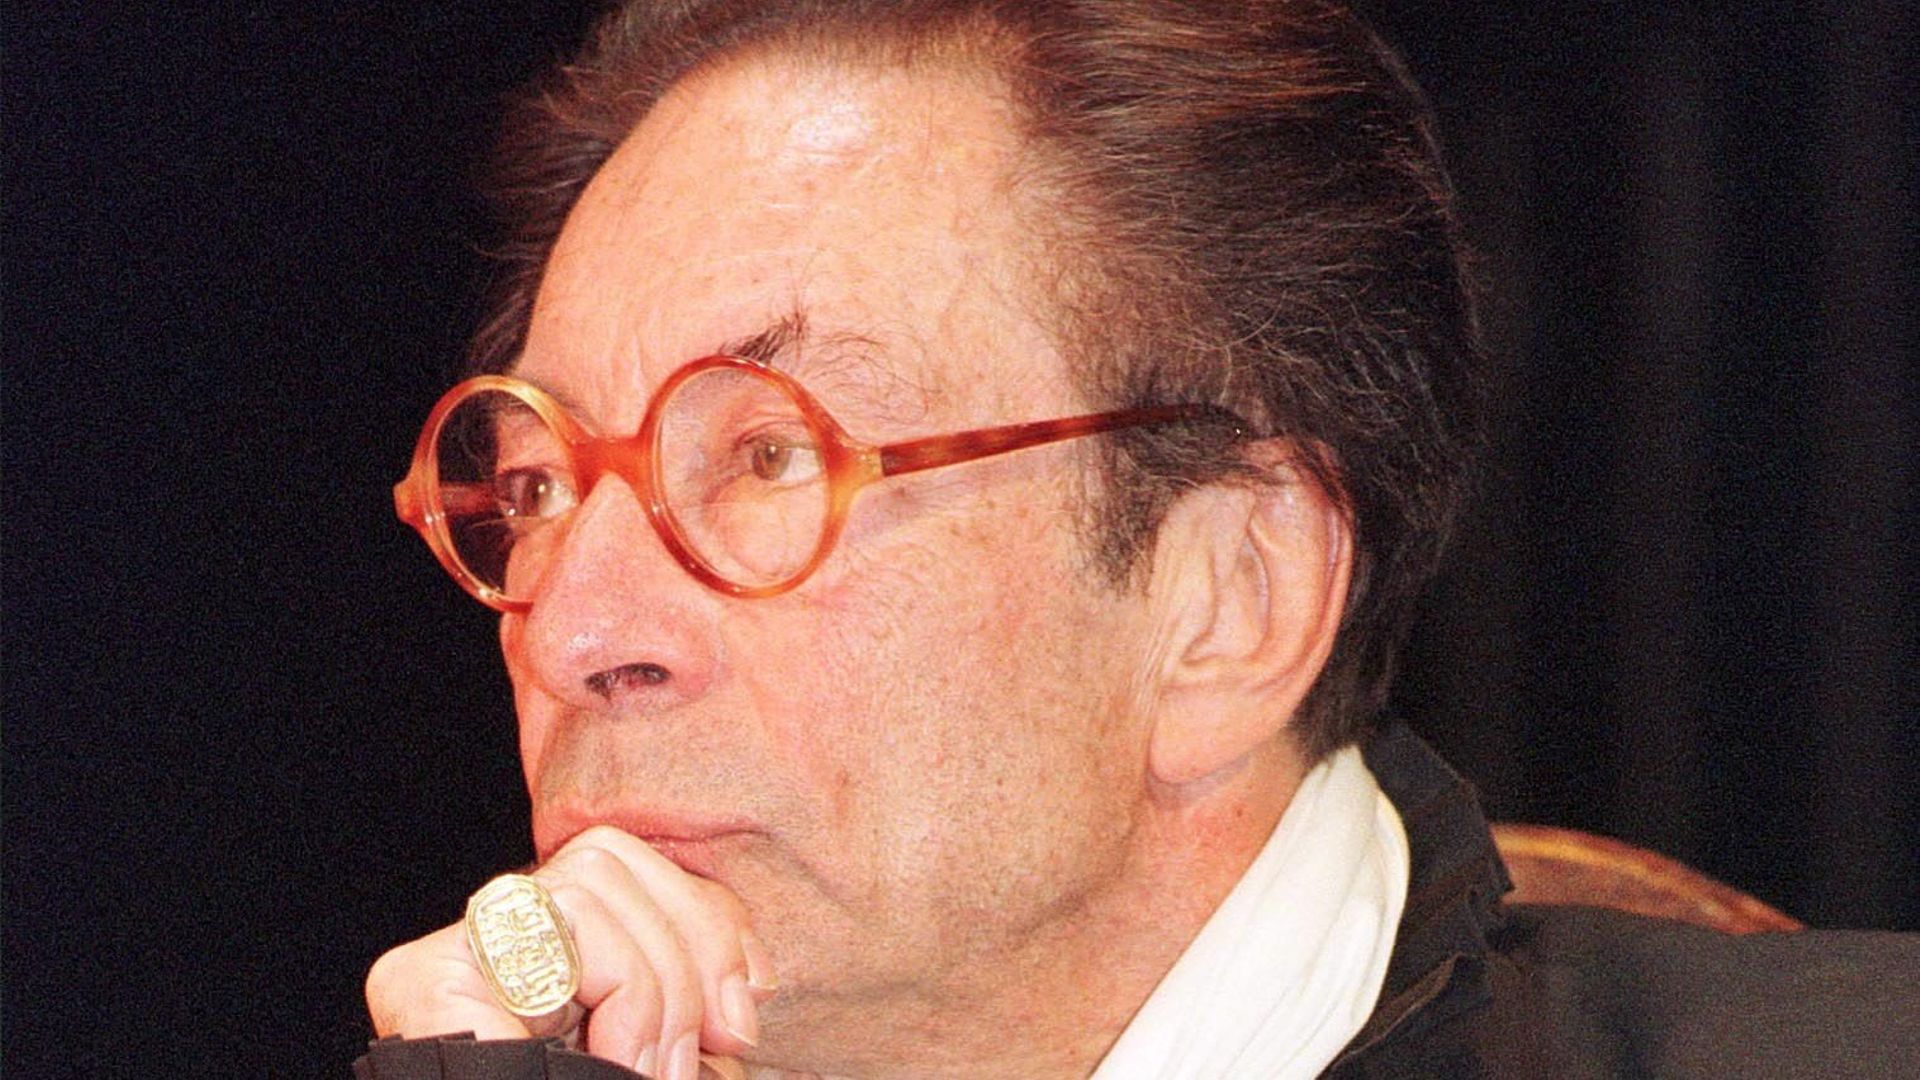 En 2002, le comédien Claude Volter célébrait son 50e anniversaire de théâtre. En 2021, son Théâtre fête à son tour son 50e anniversaire